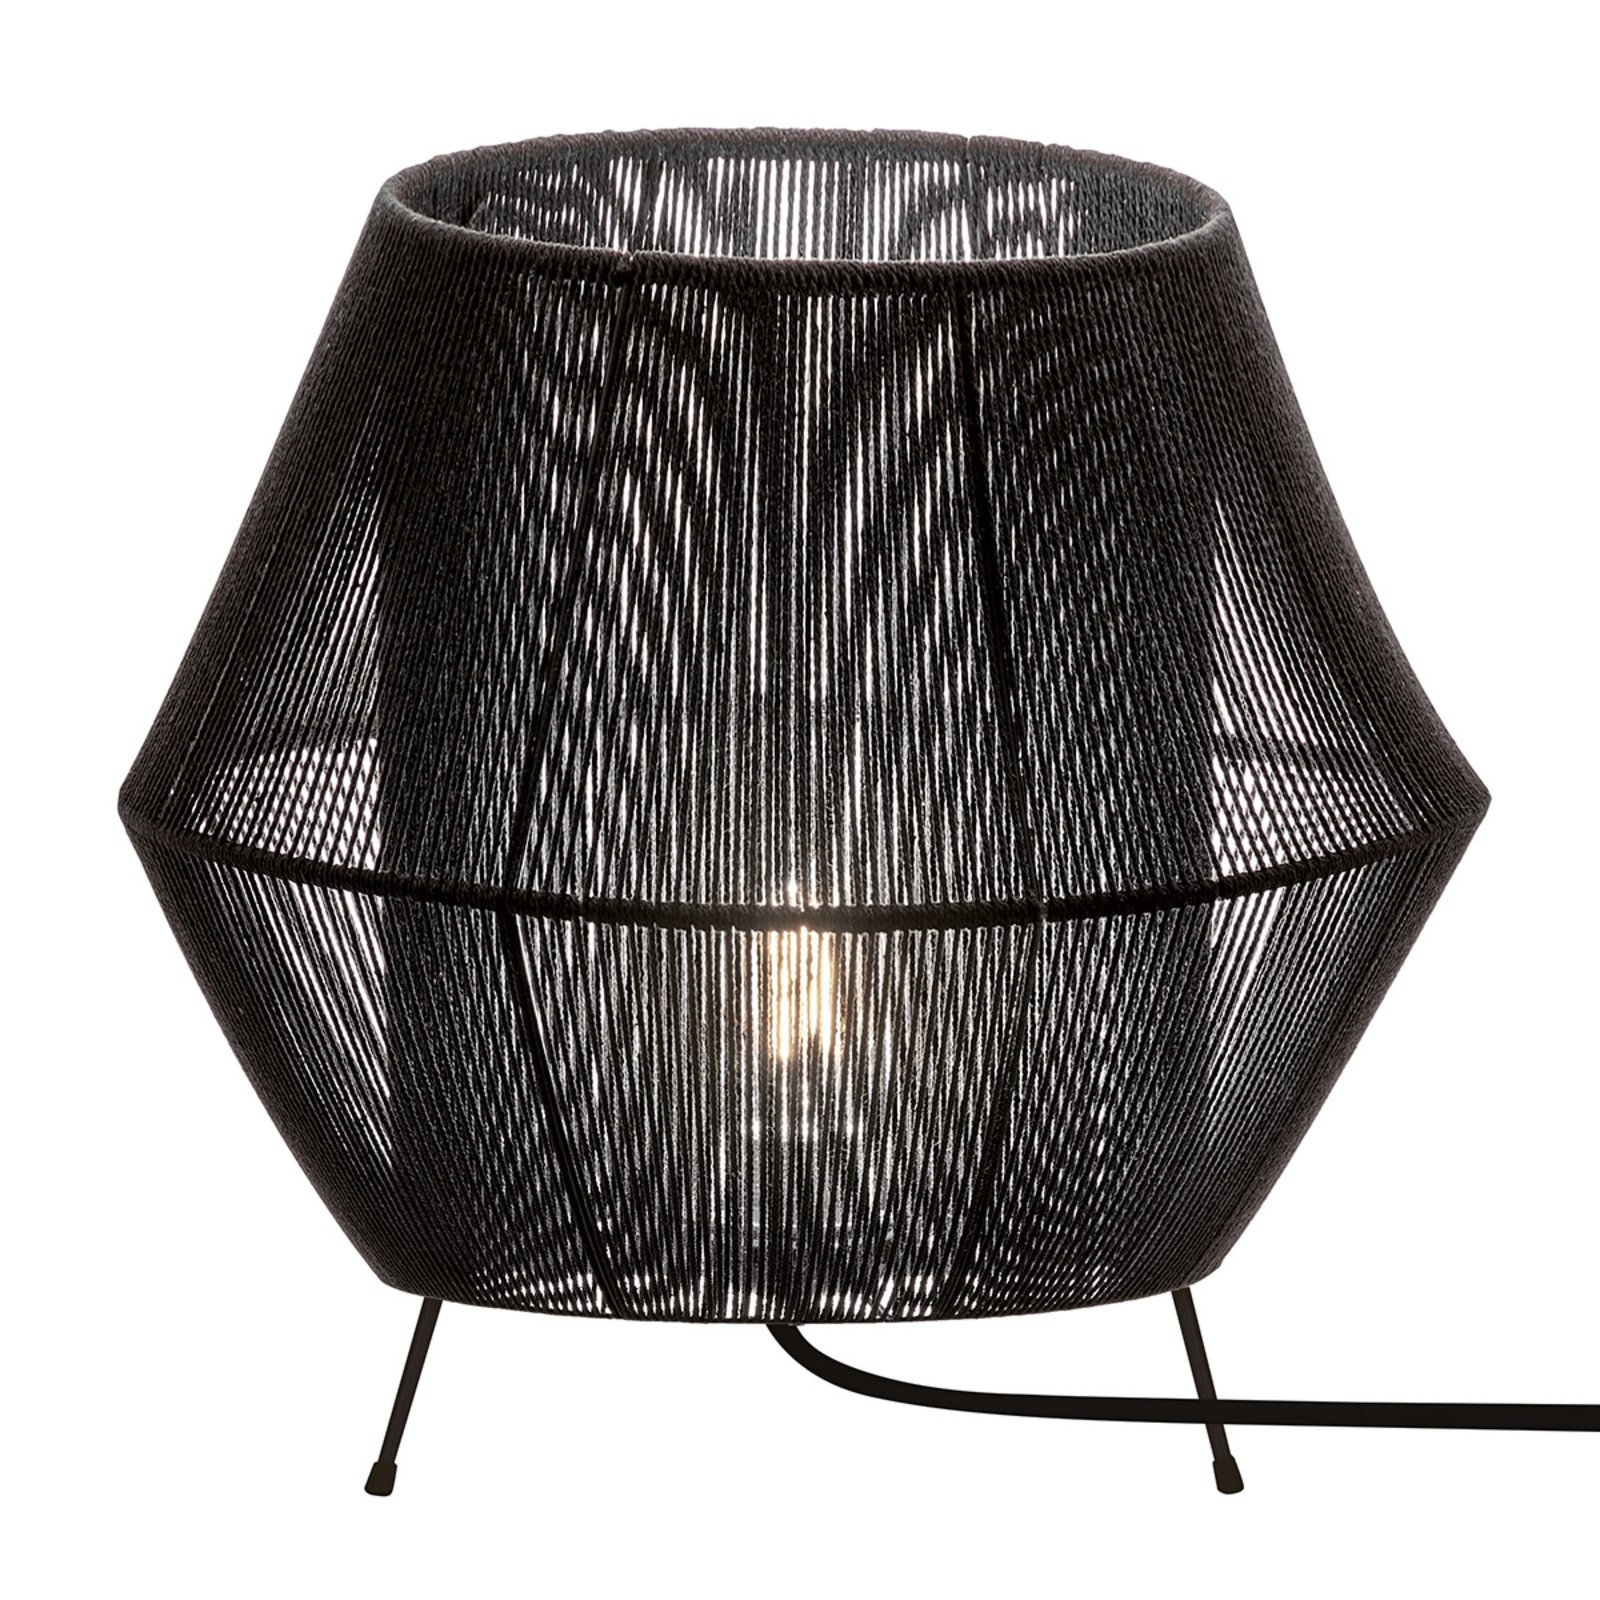 Zaira stolna lampa u crnoj boji